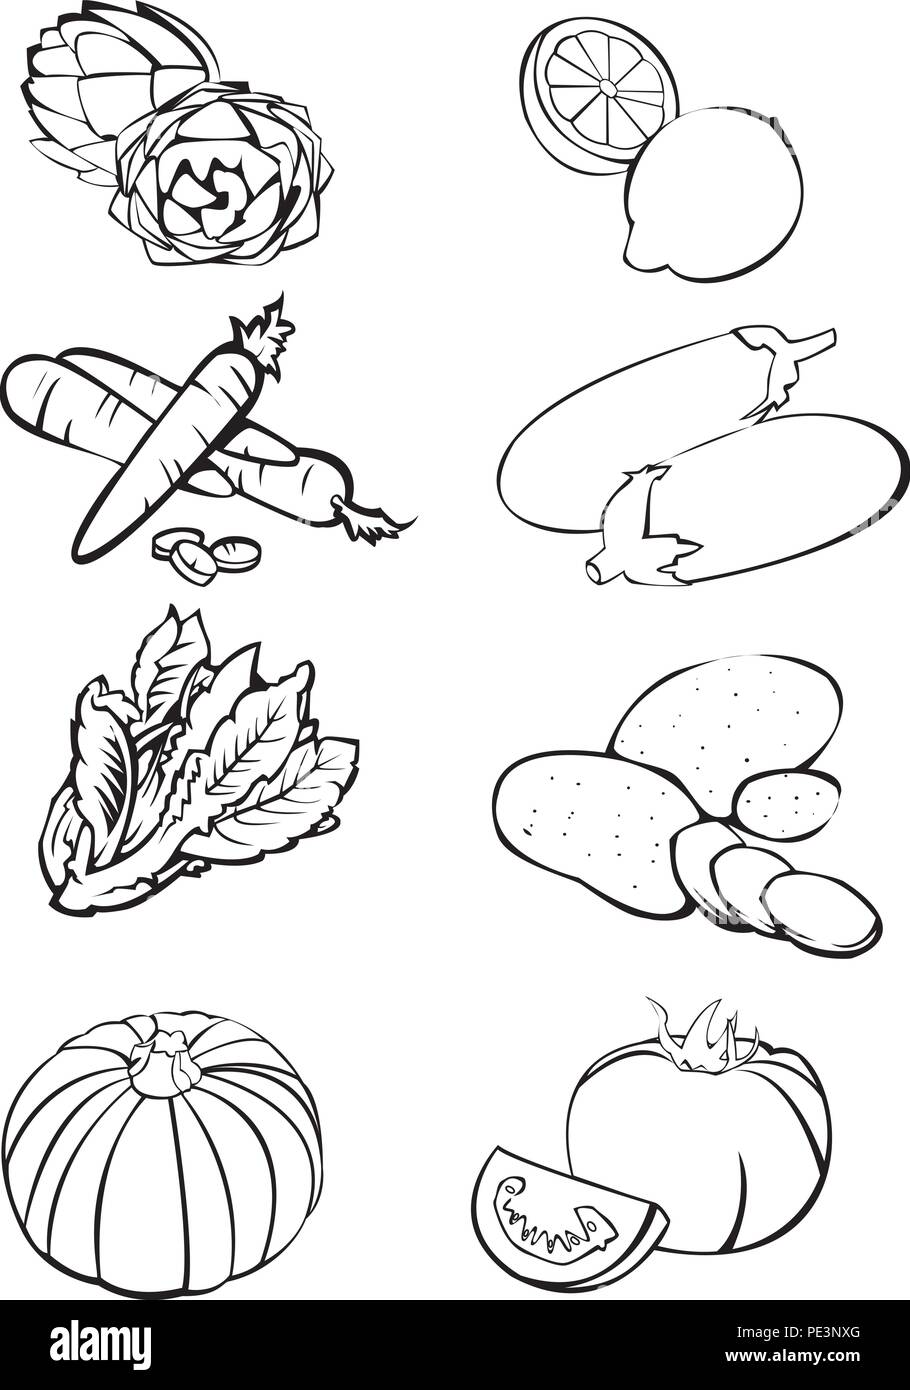 Schwarz und weiß Abbildung: acht Gemüse: Artischocken - Zitronen - Karotten - Auberginen - Salat - Kartoffeln - Kürbis - Tomaten Stock Vektor